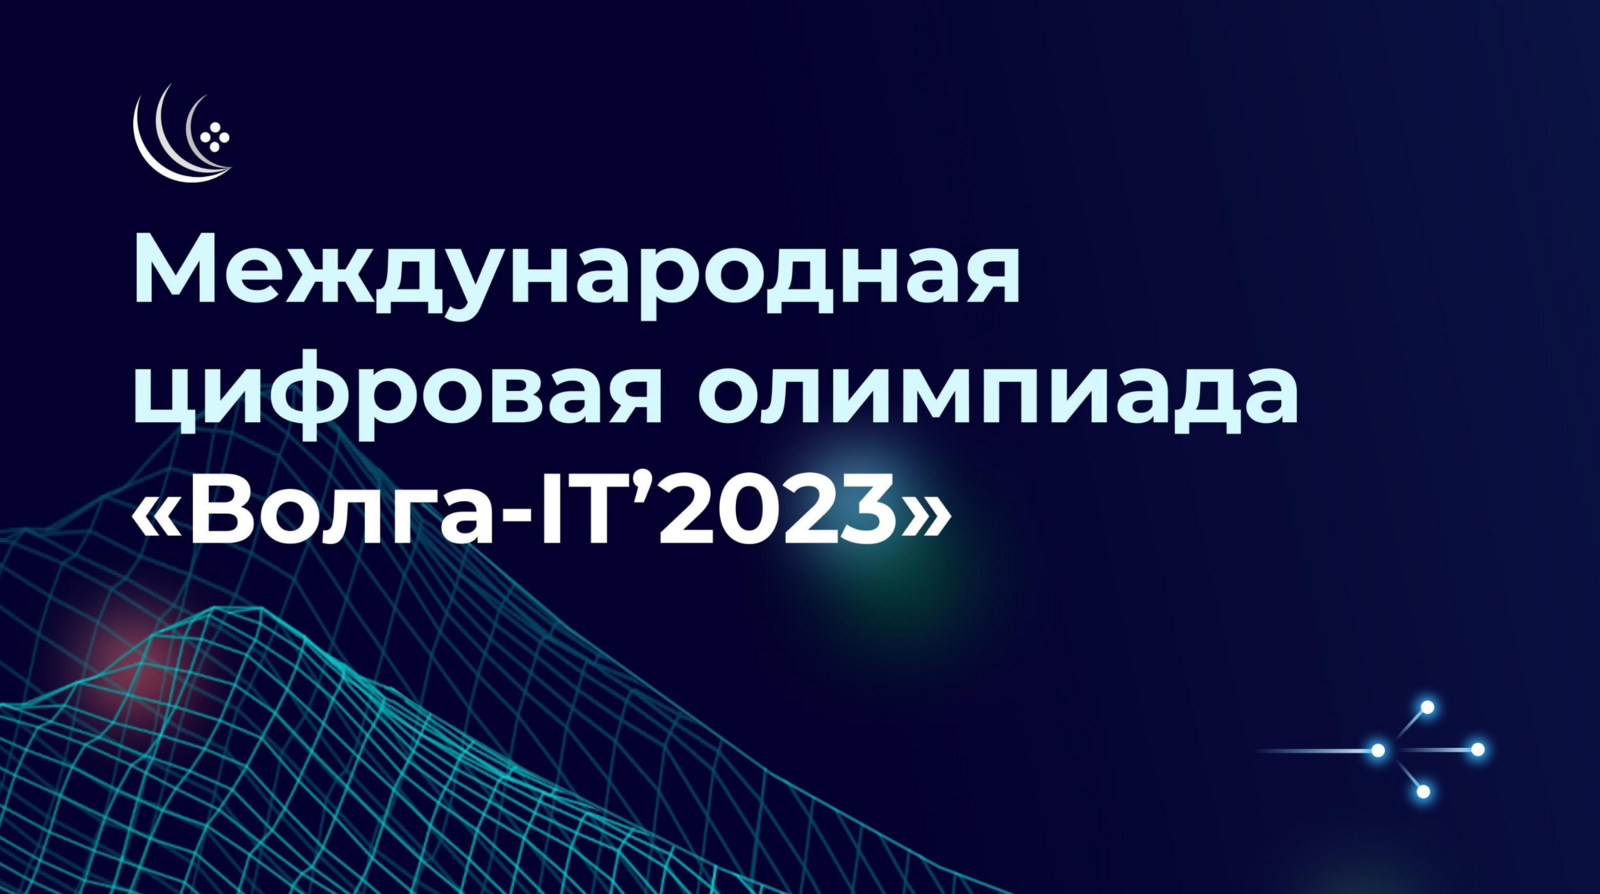 В 2023 году состоится международная цифровая олимпиада «Волга-IT’2023»